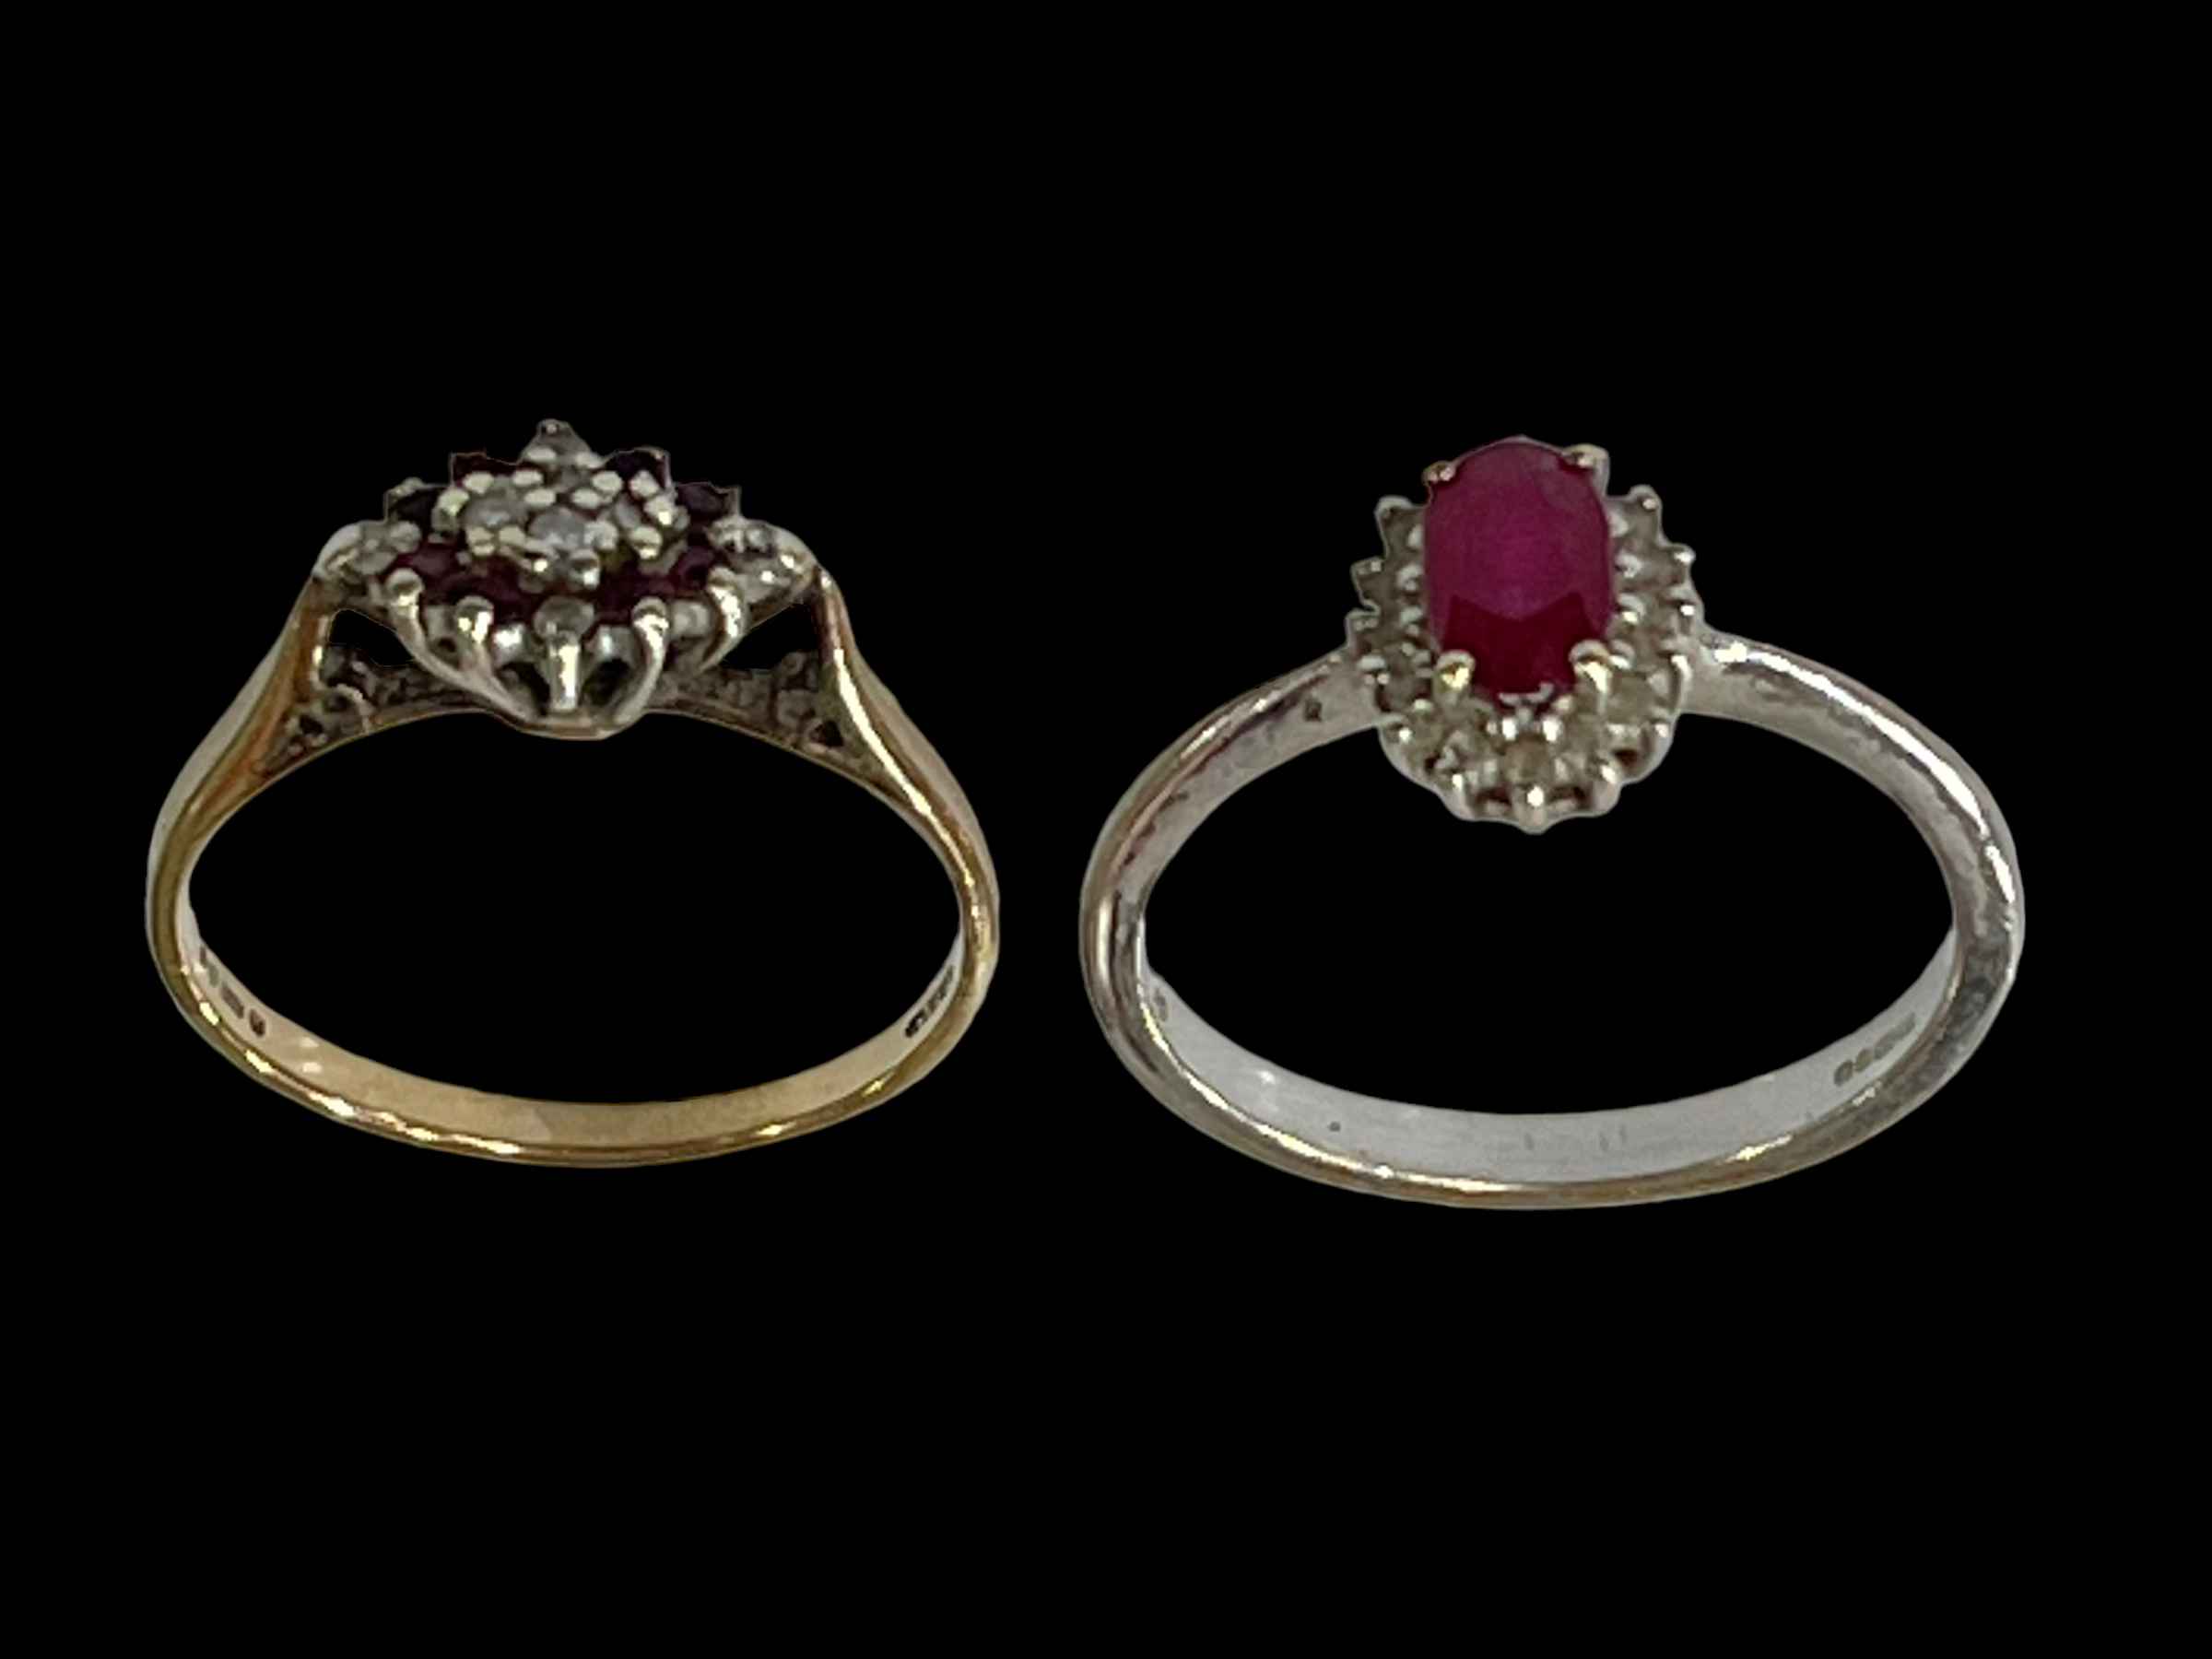 Two 9 carat gold gem set rings.